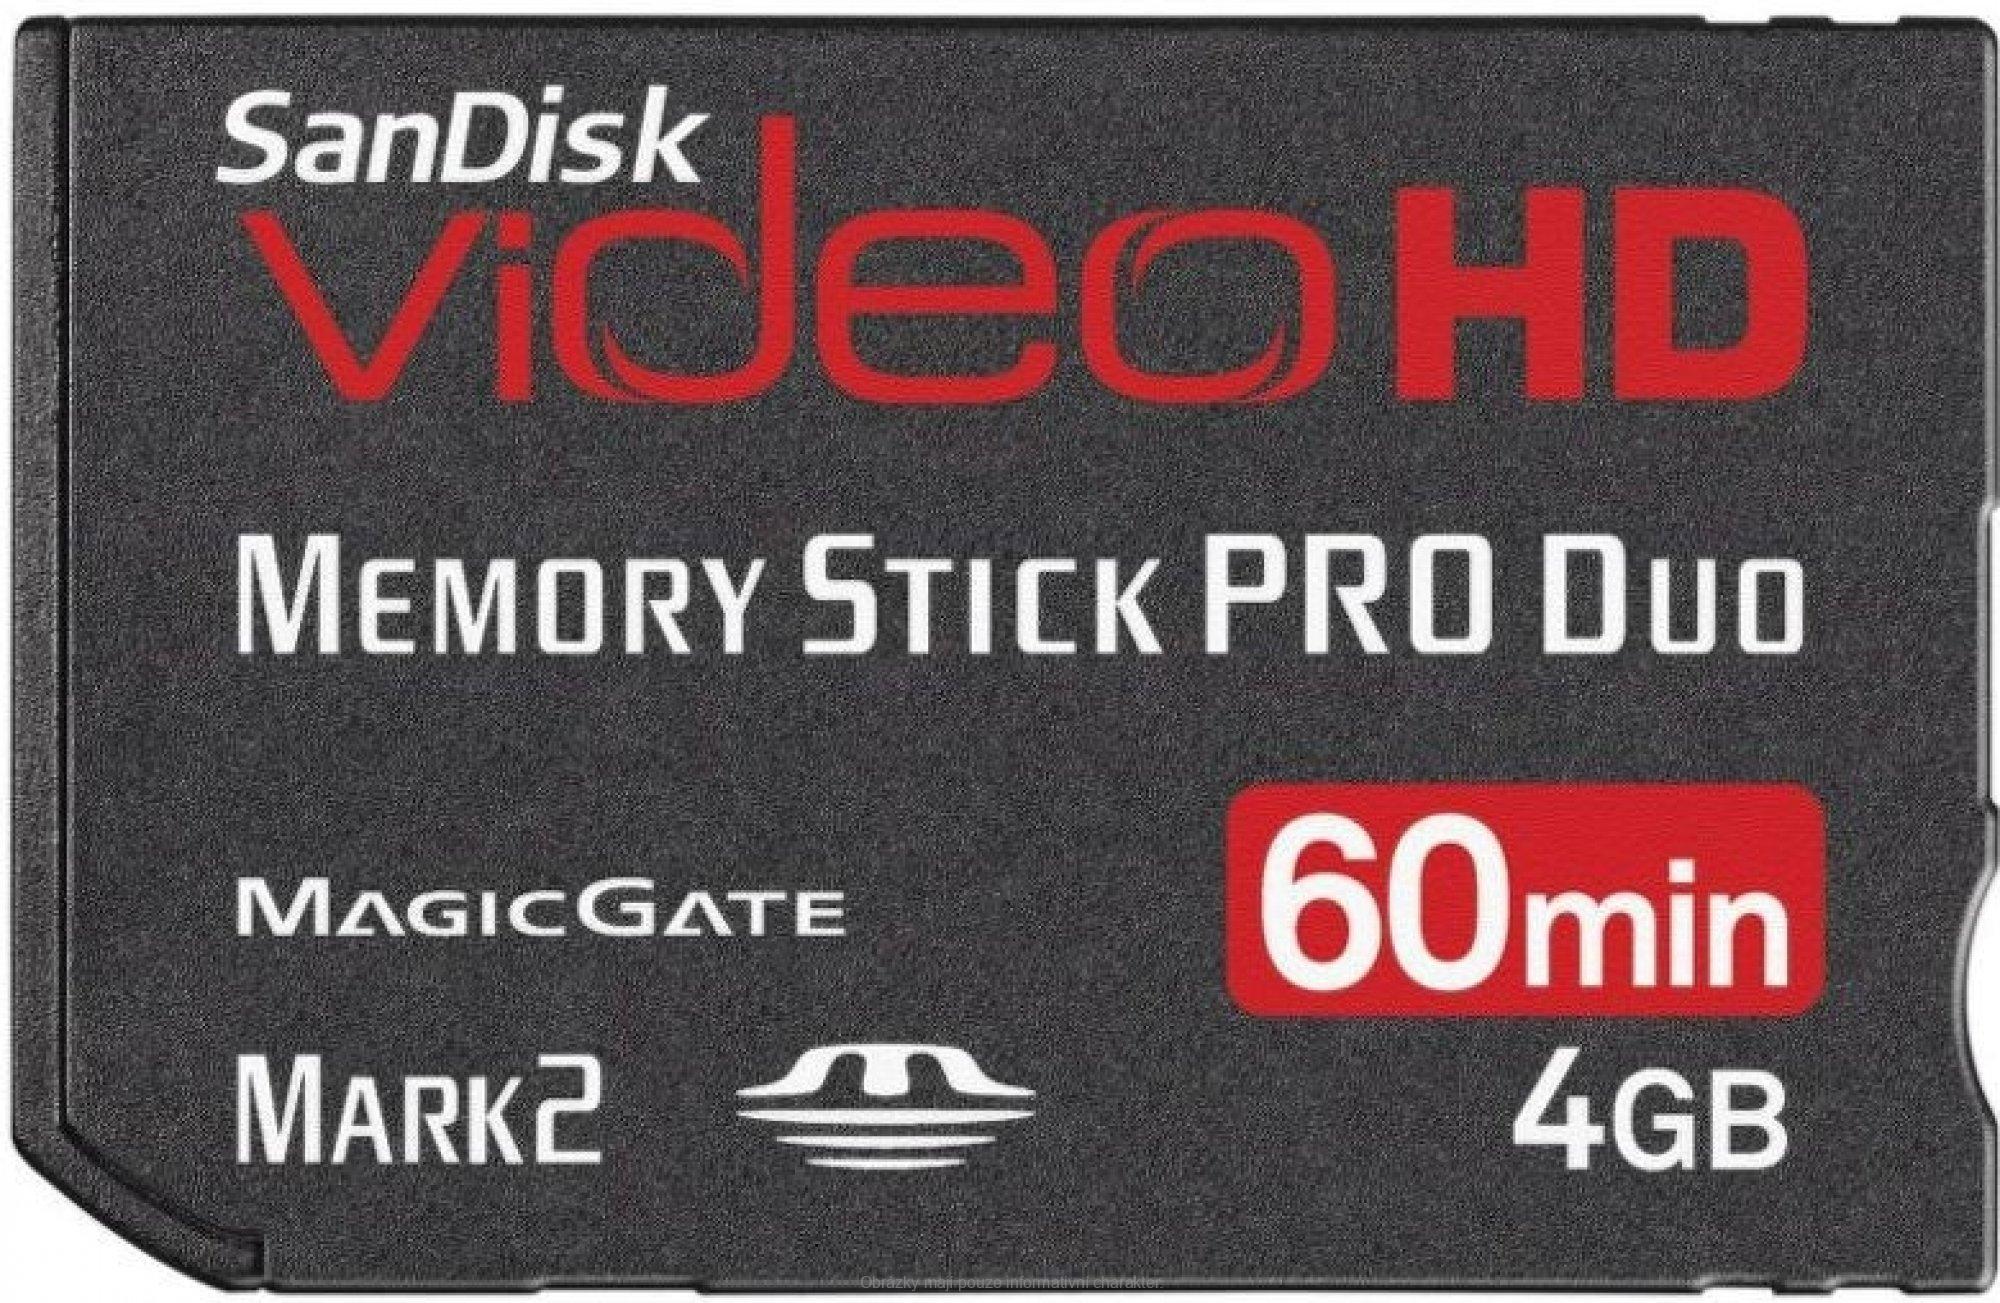 SanDisk 90870 Ultra II MS PRO Duo Video HD 4GB